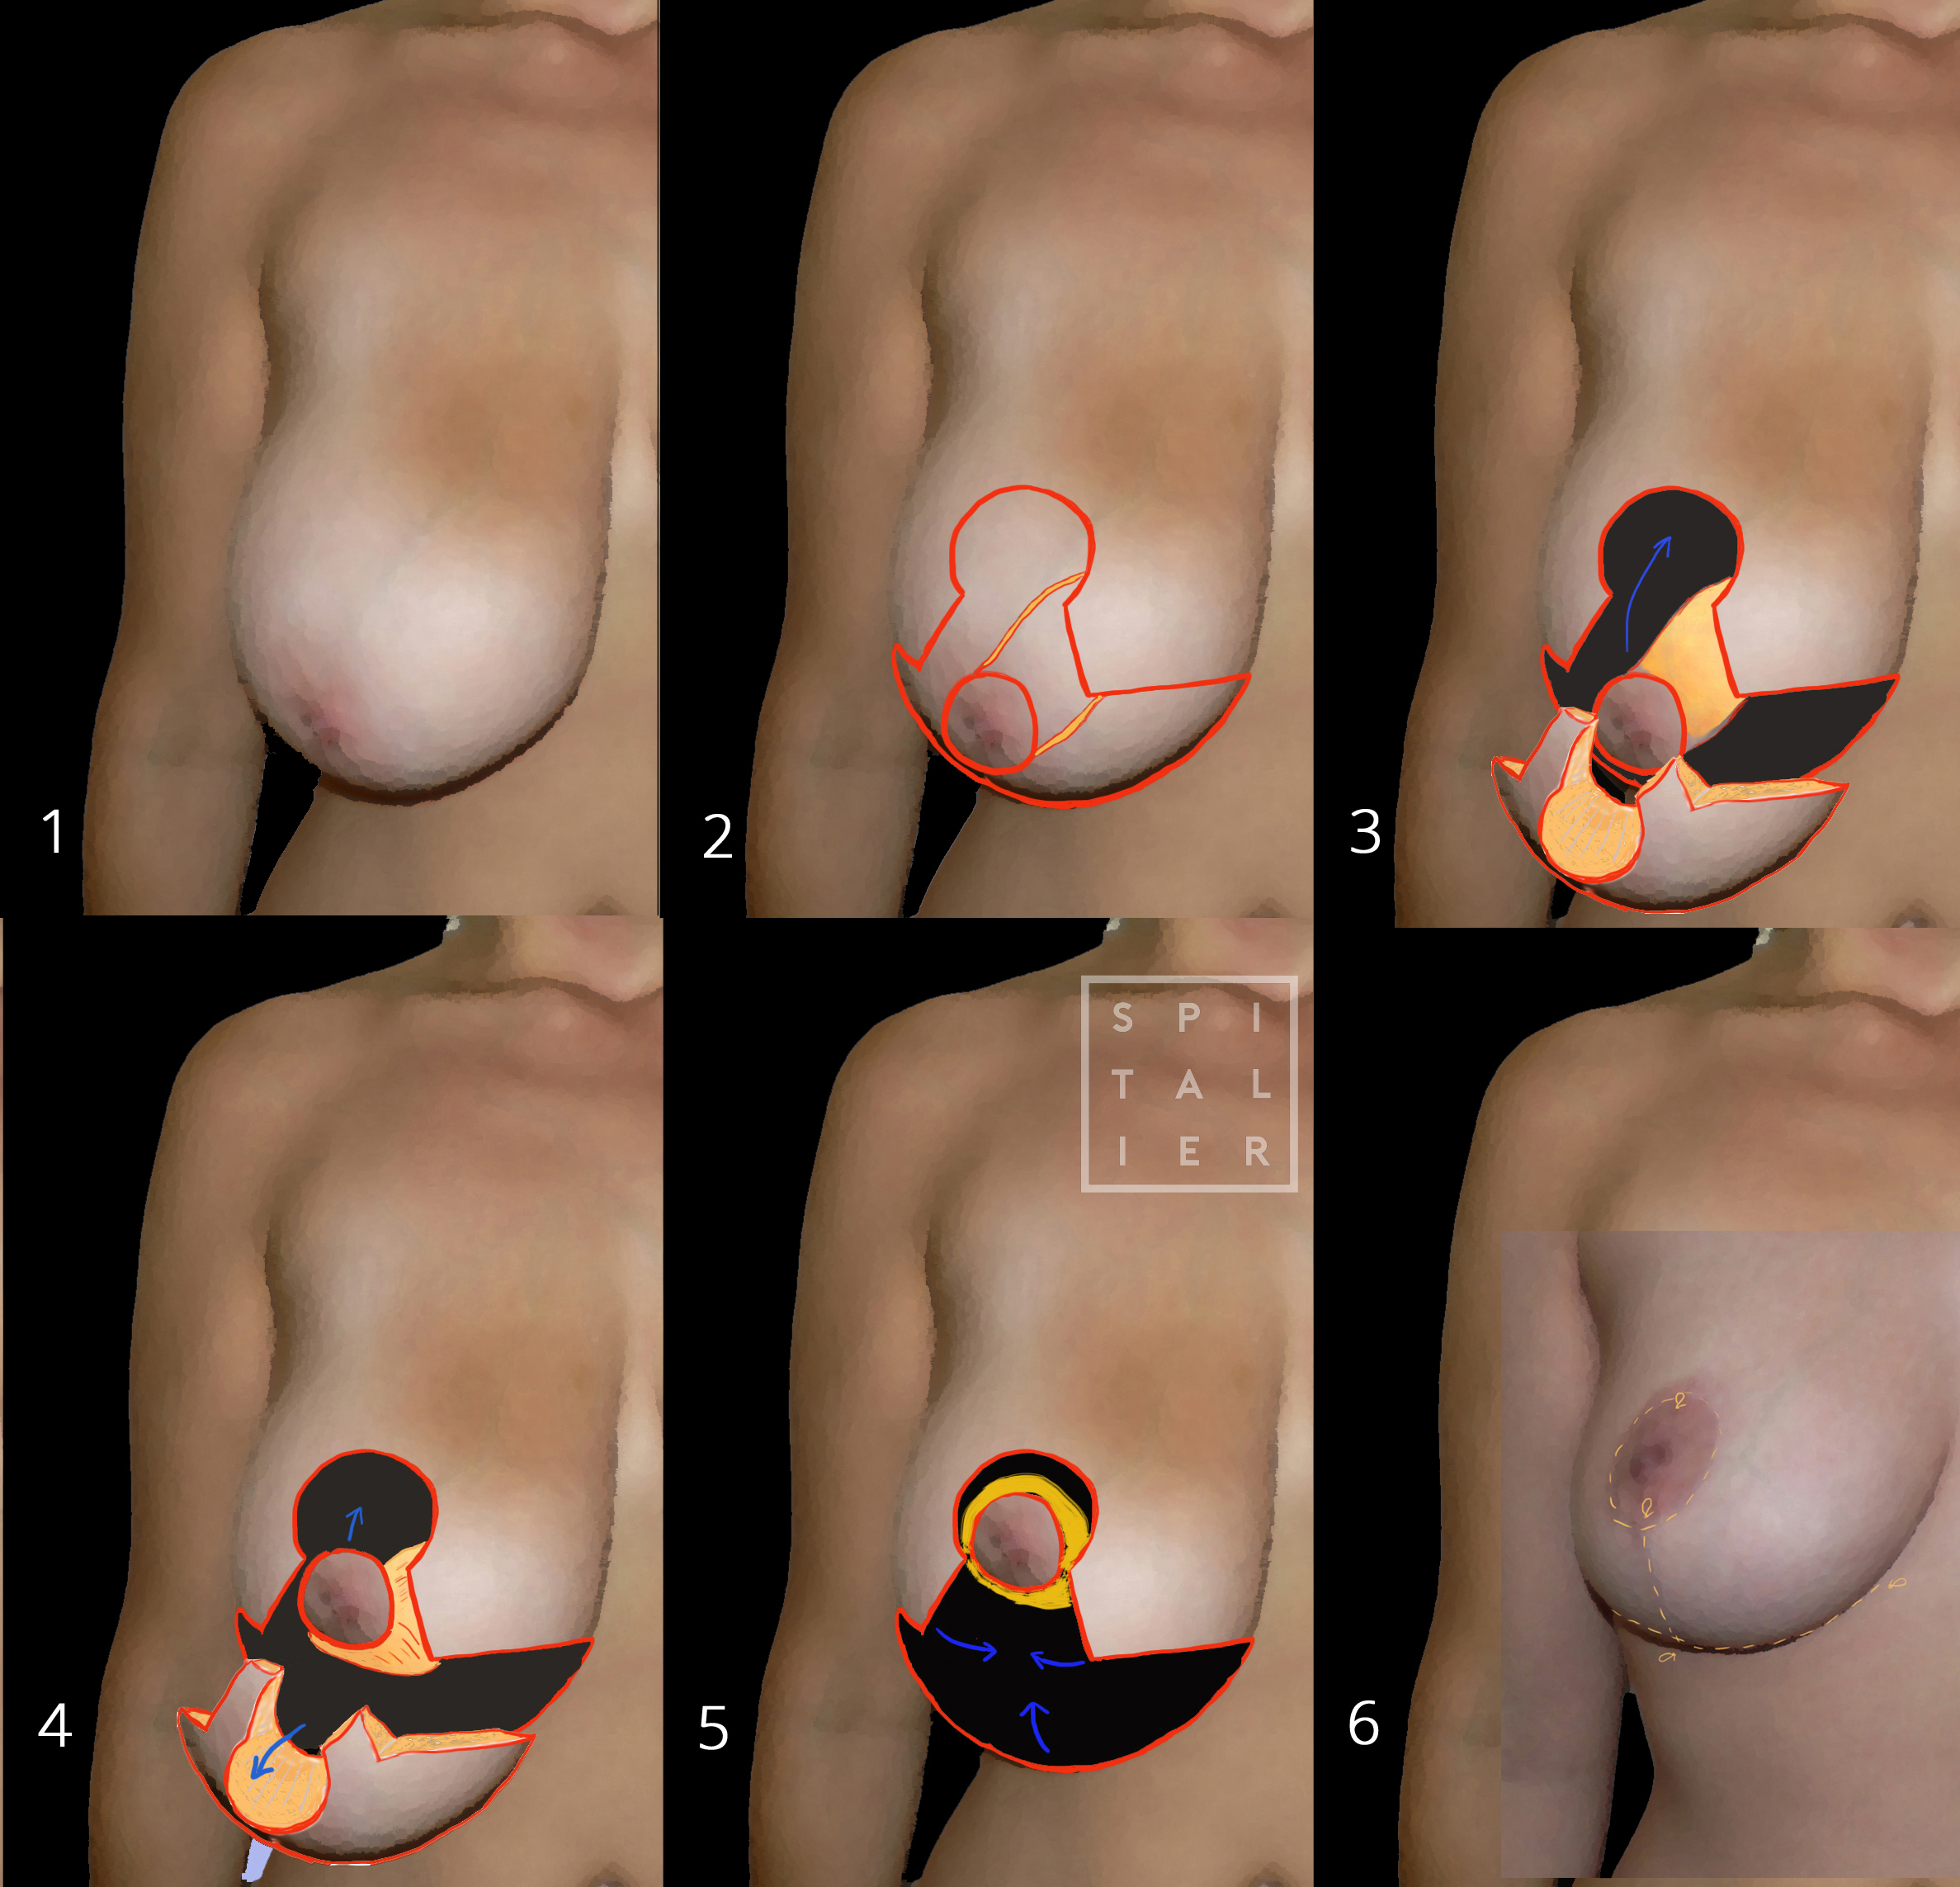 réduction mammaire hypertrophie Annecy